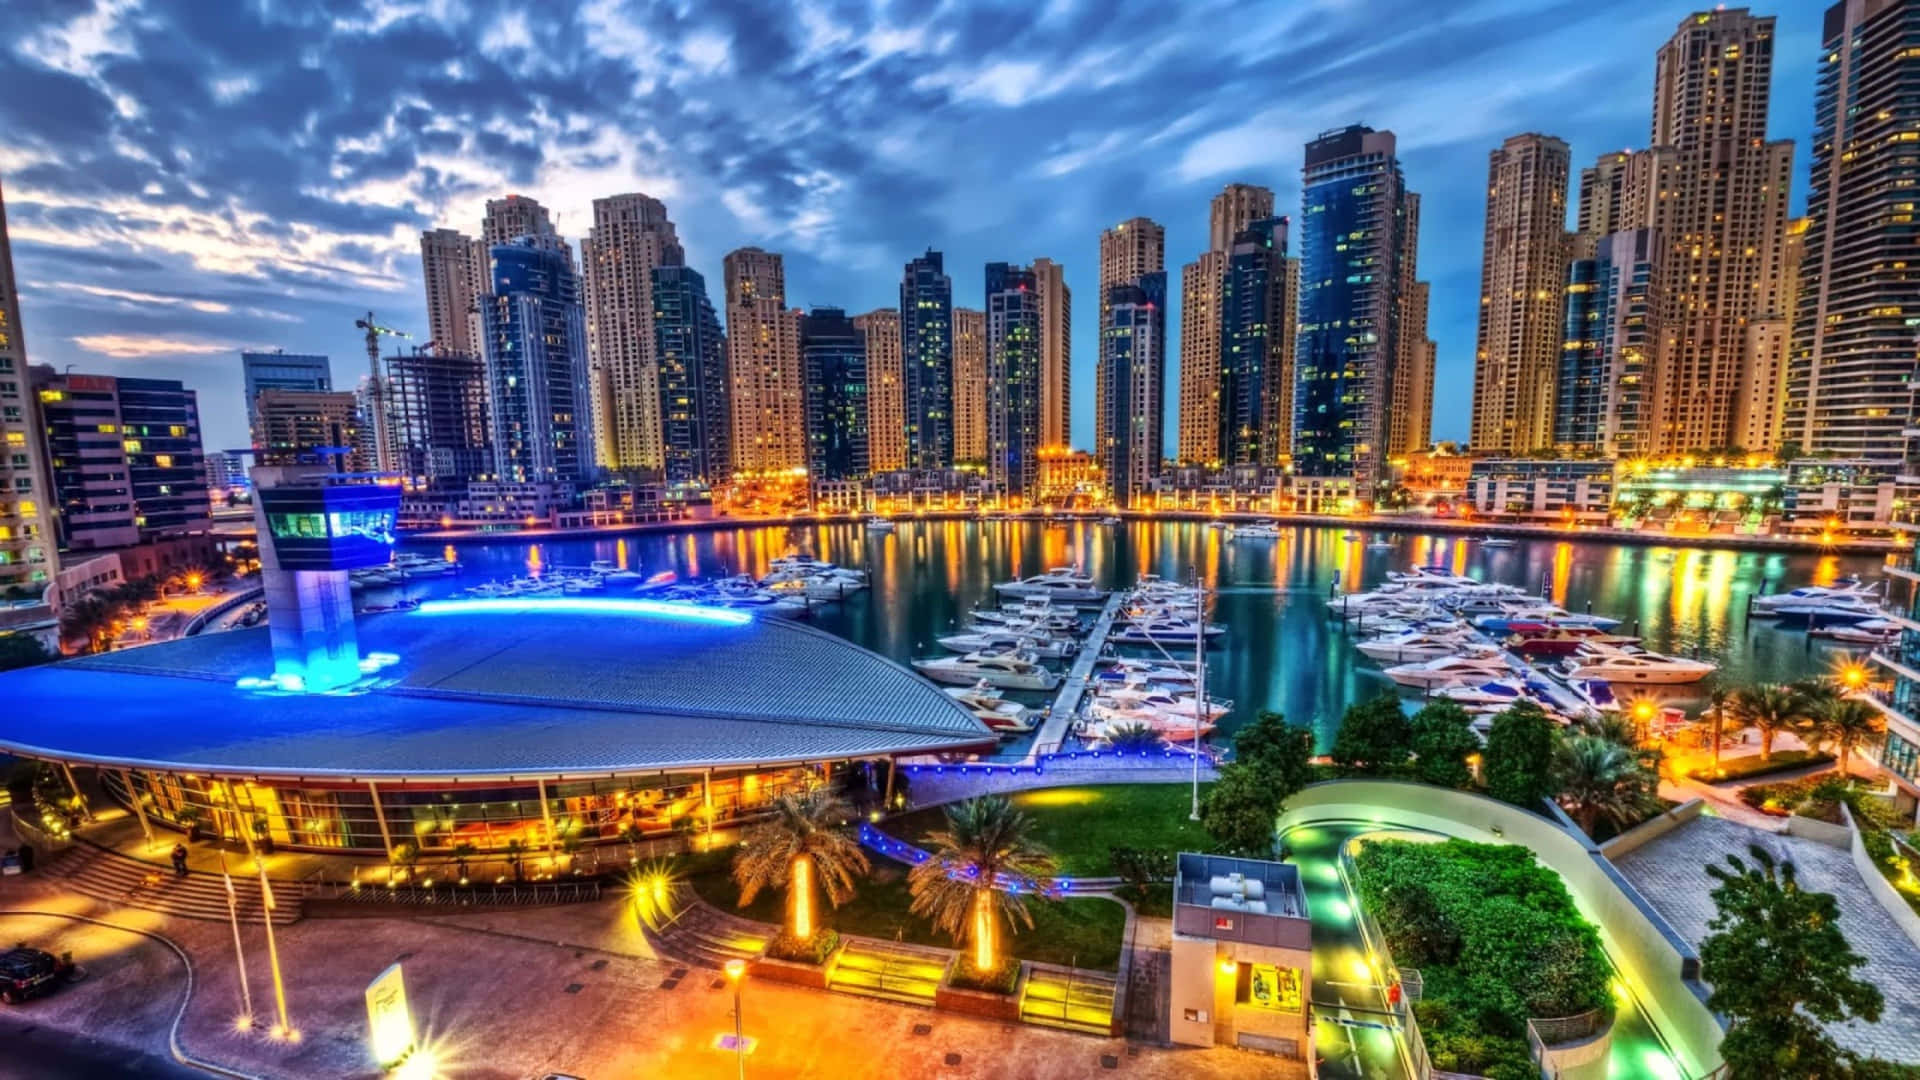 Iluminandoa Cidade De Dubai.